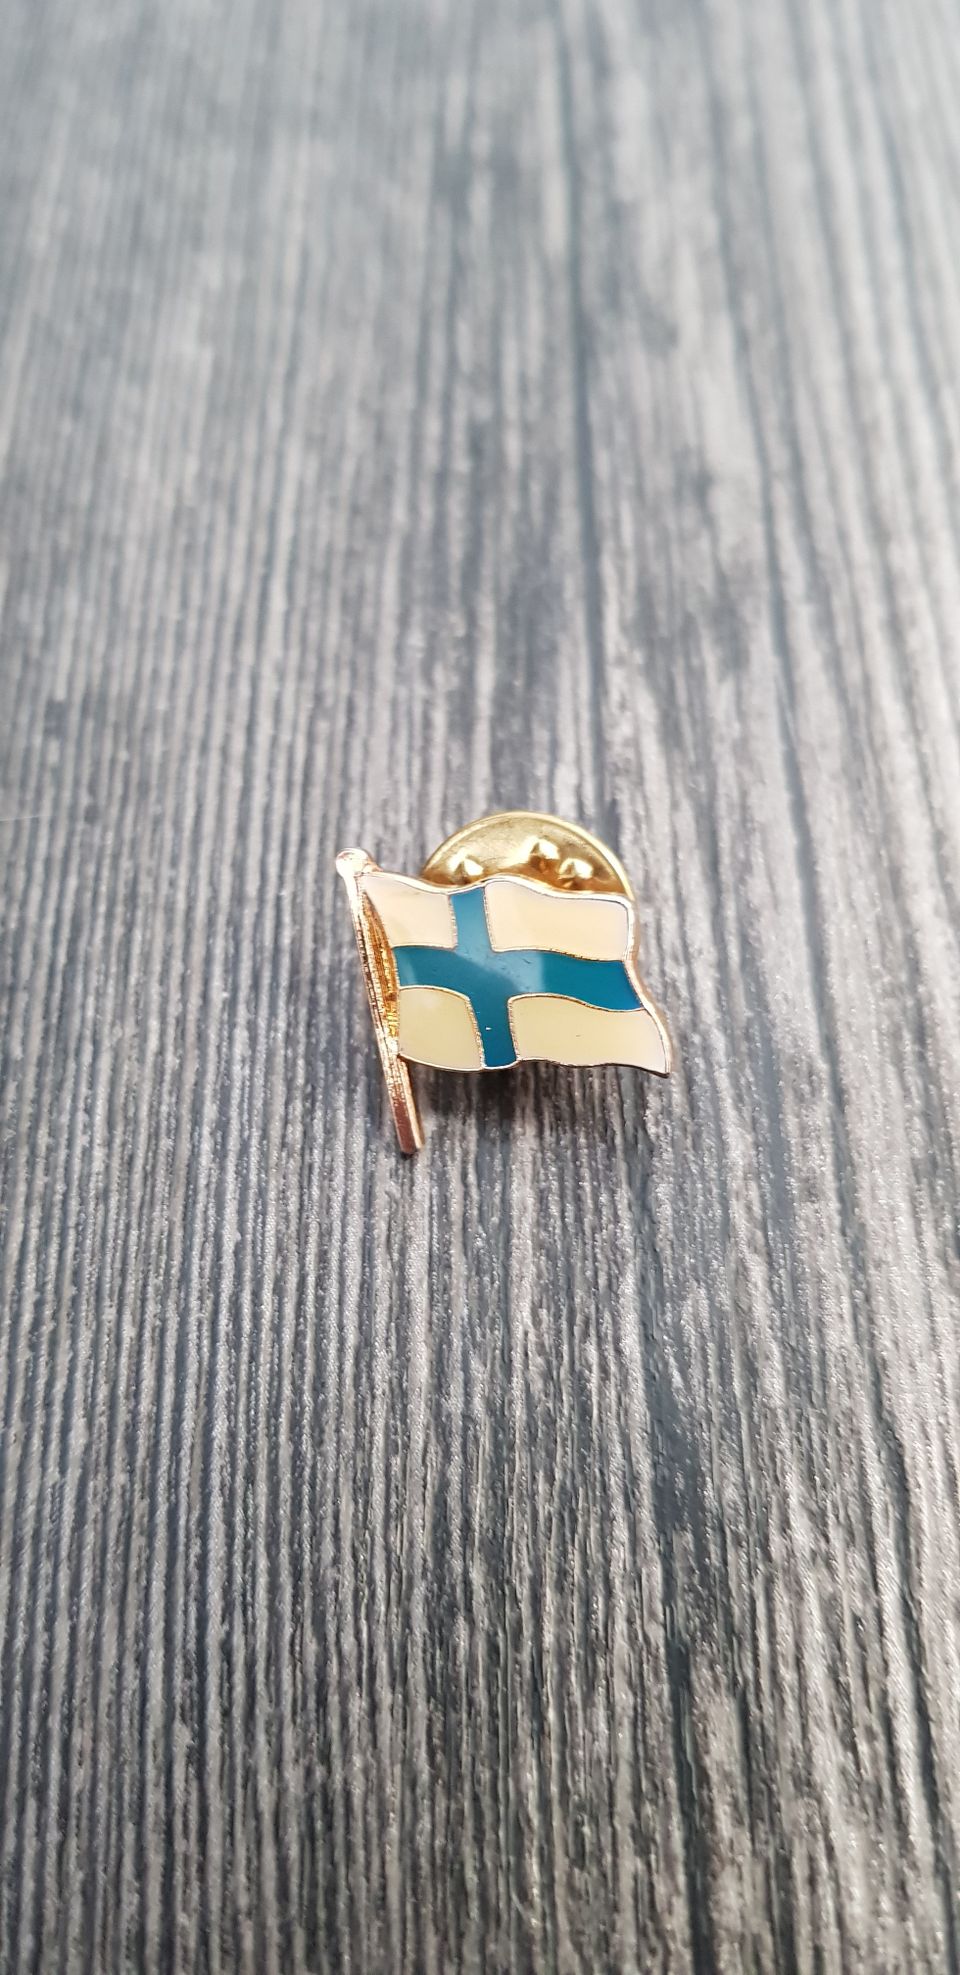 Suomen lippu pinssi.